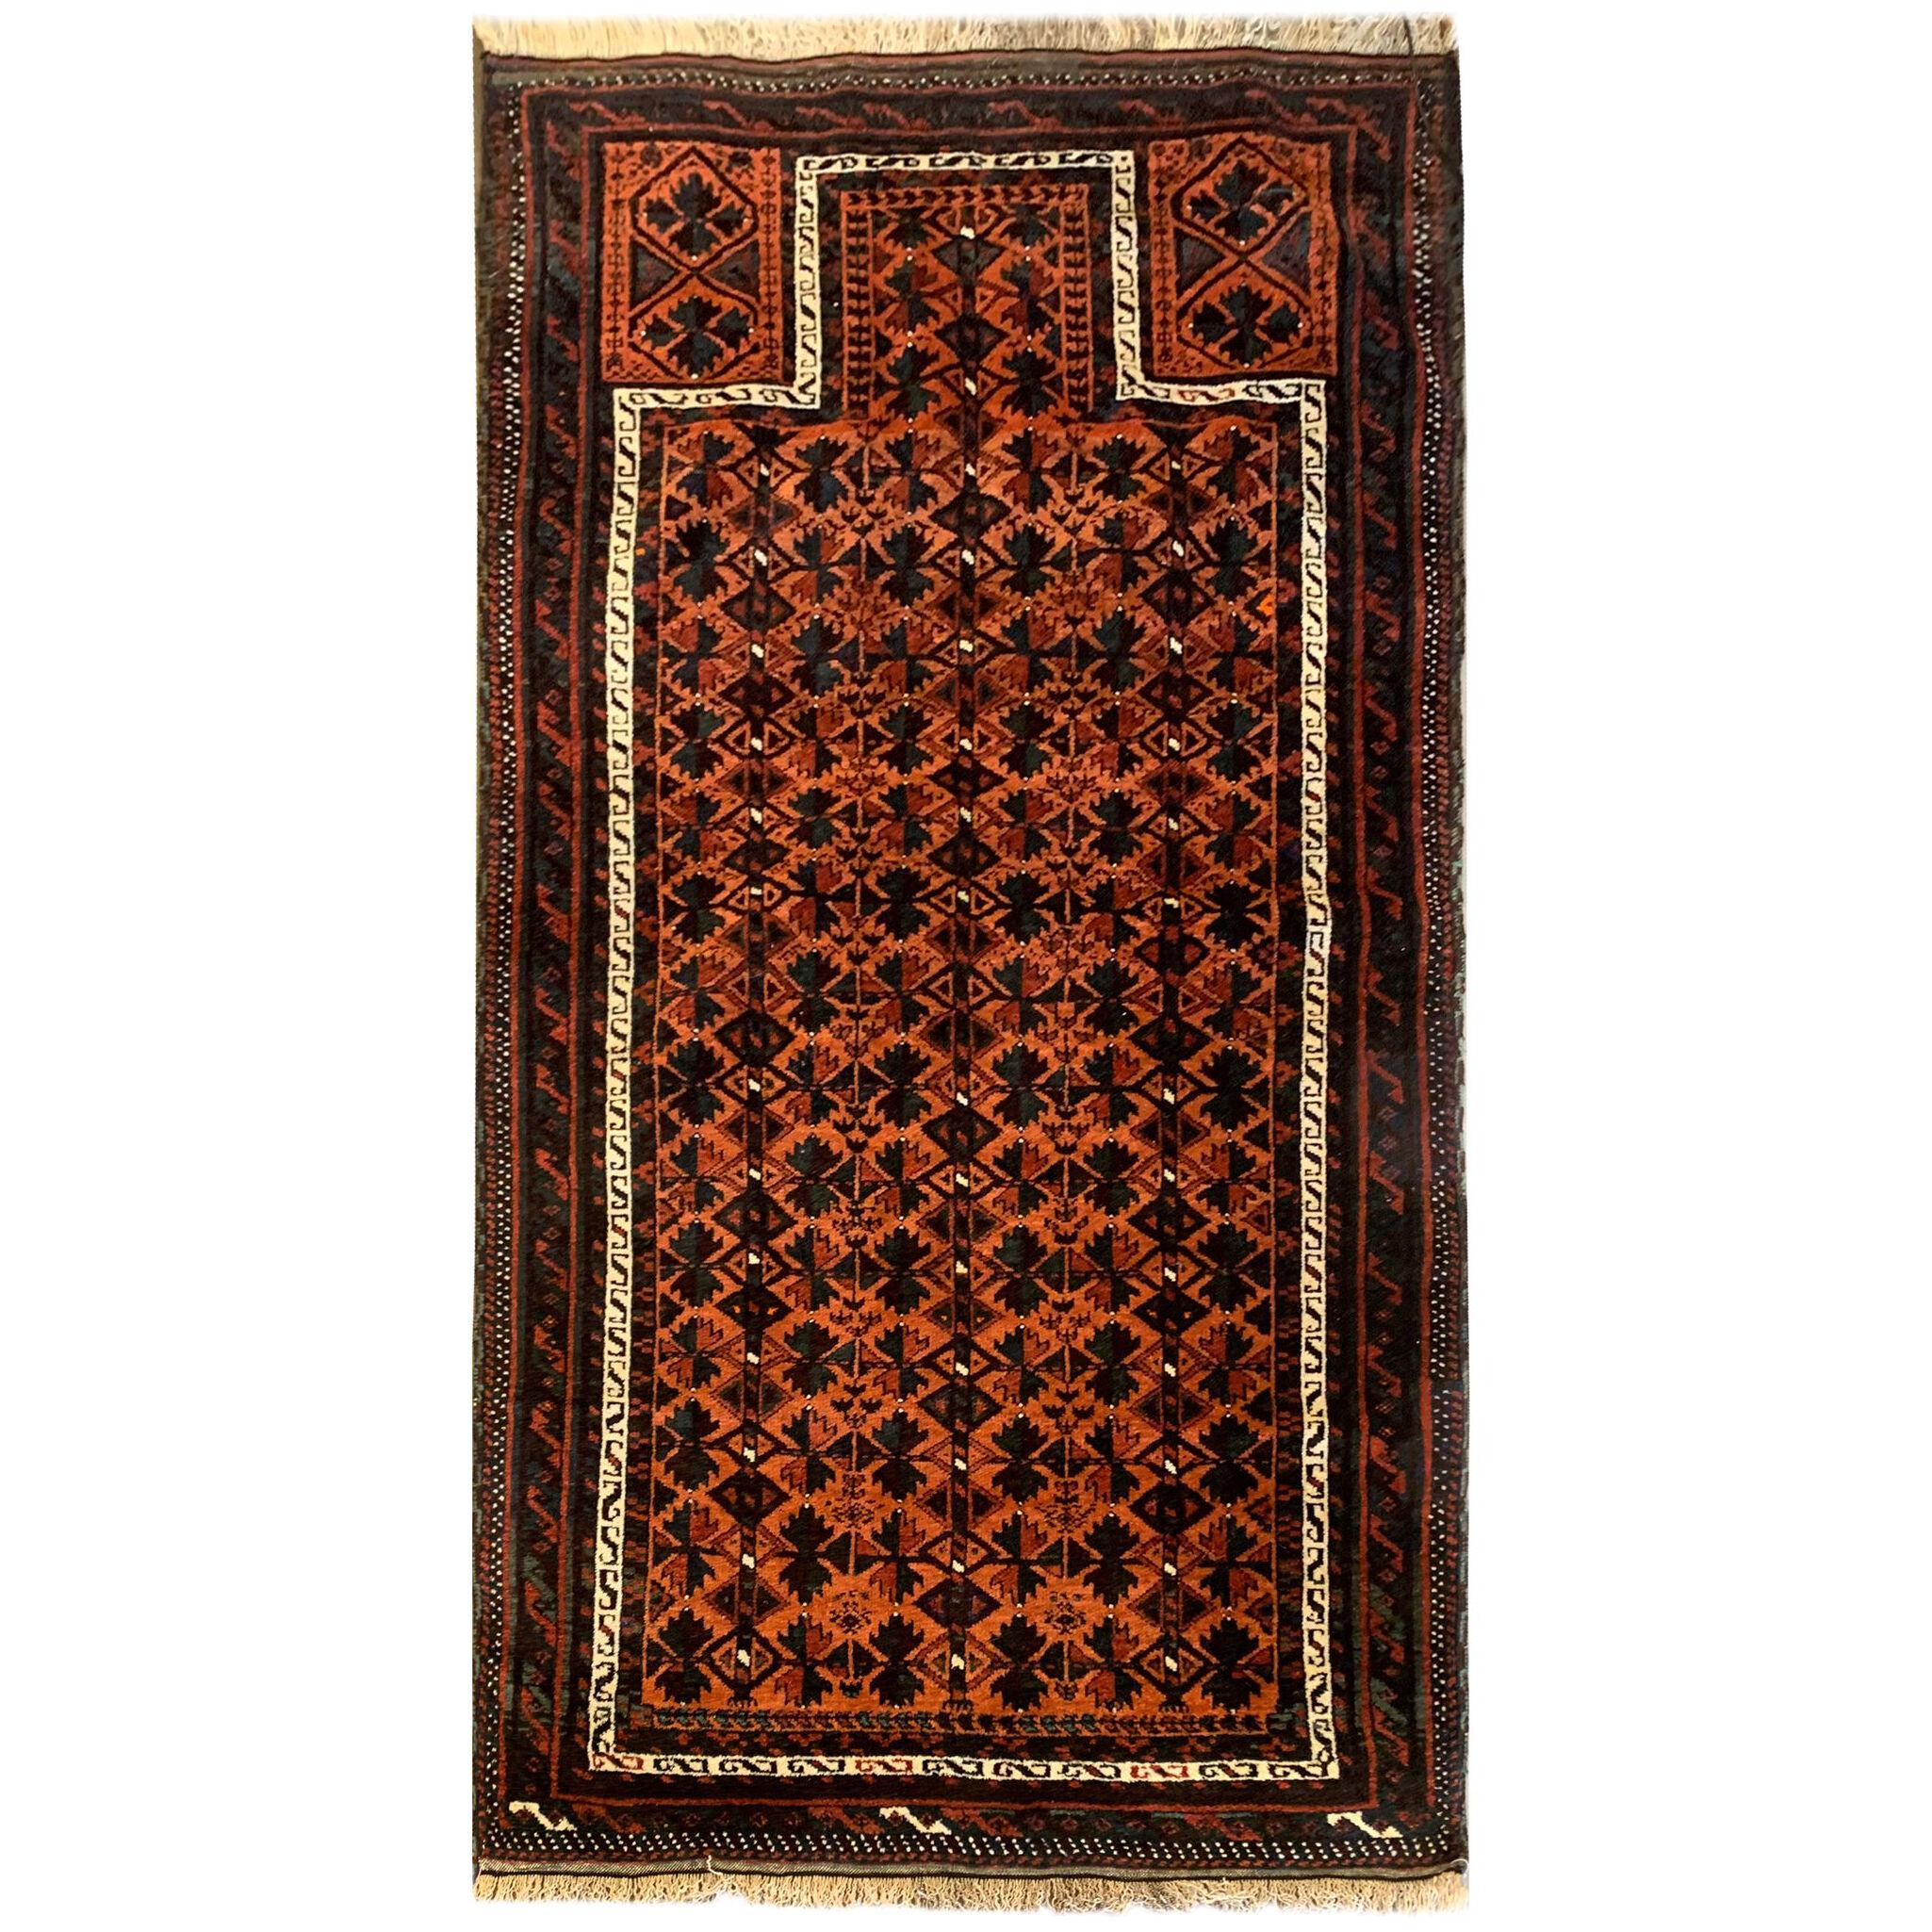 Antique Persian Rug Handmade Carpet Mihrab Baluch Rug- 85x166cm